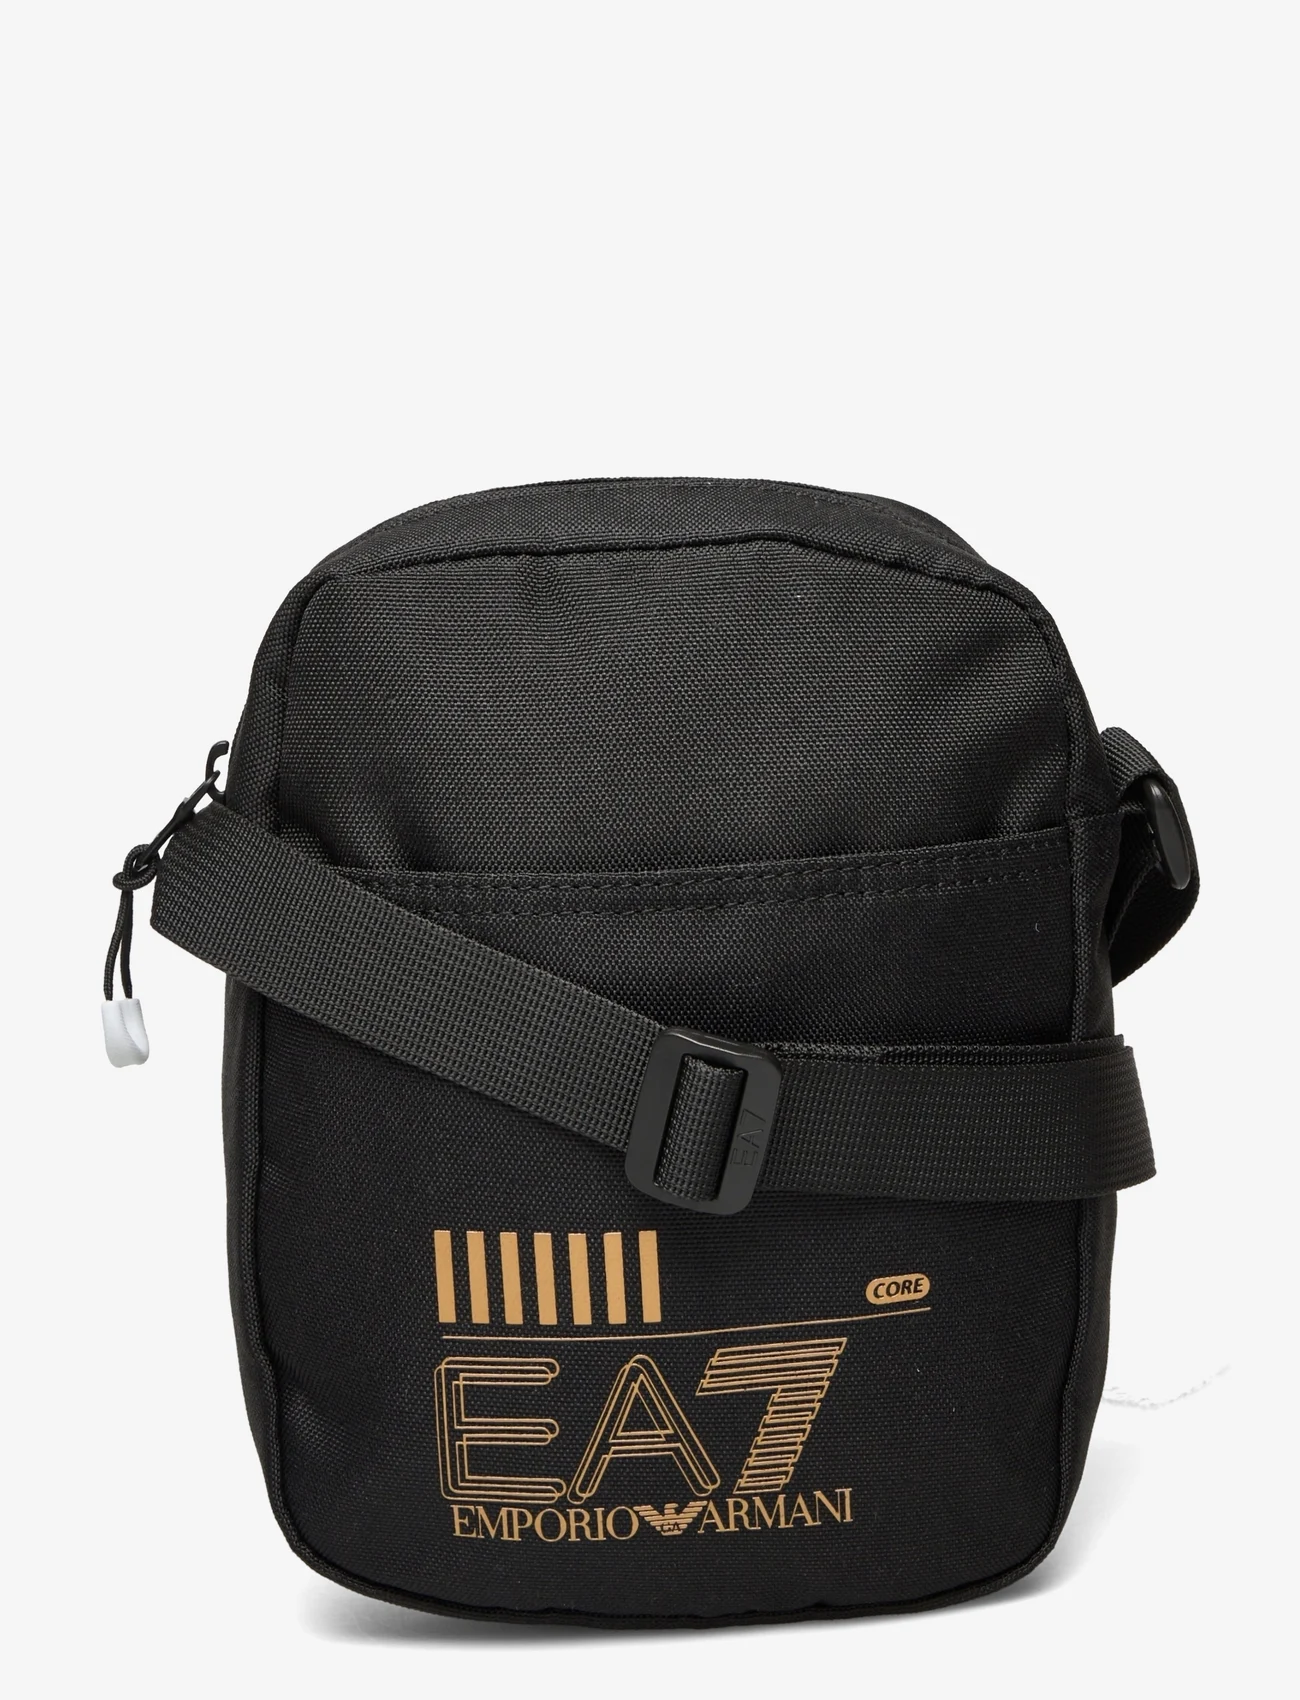 EA7 - MAN'S POUCH BAG - menn - 26121-black/gold logo - 0